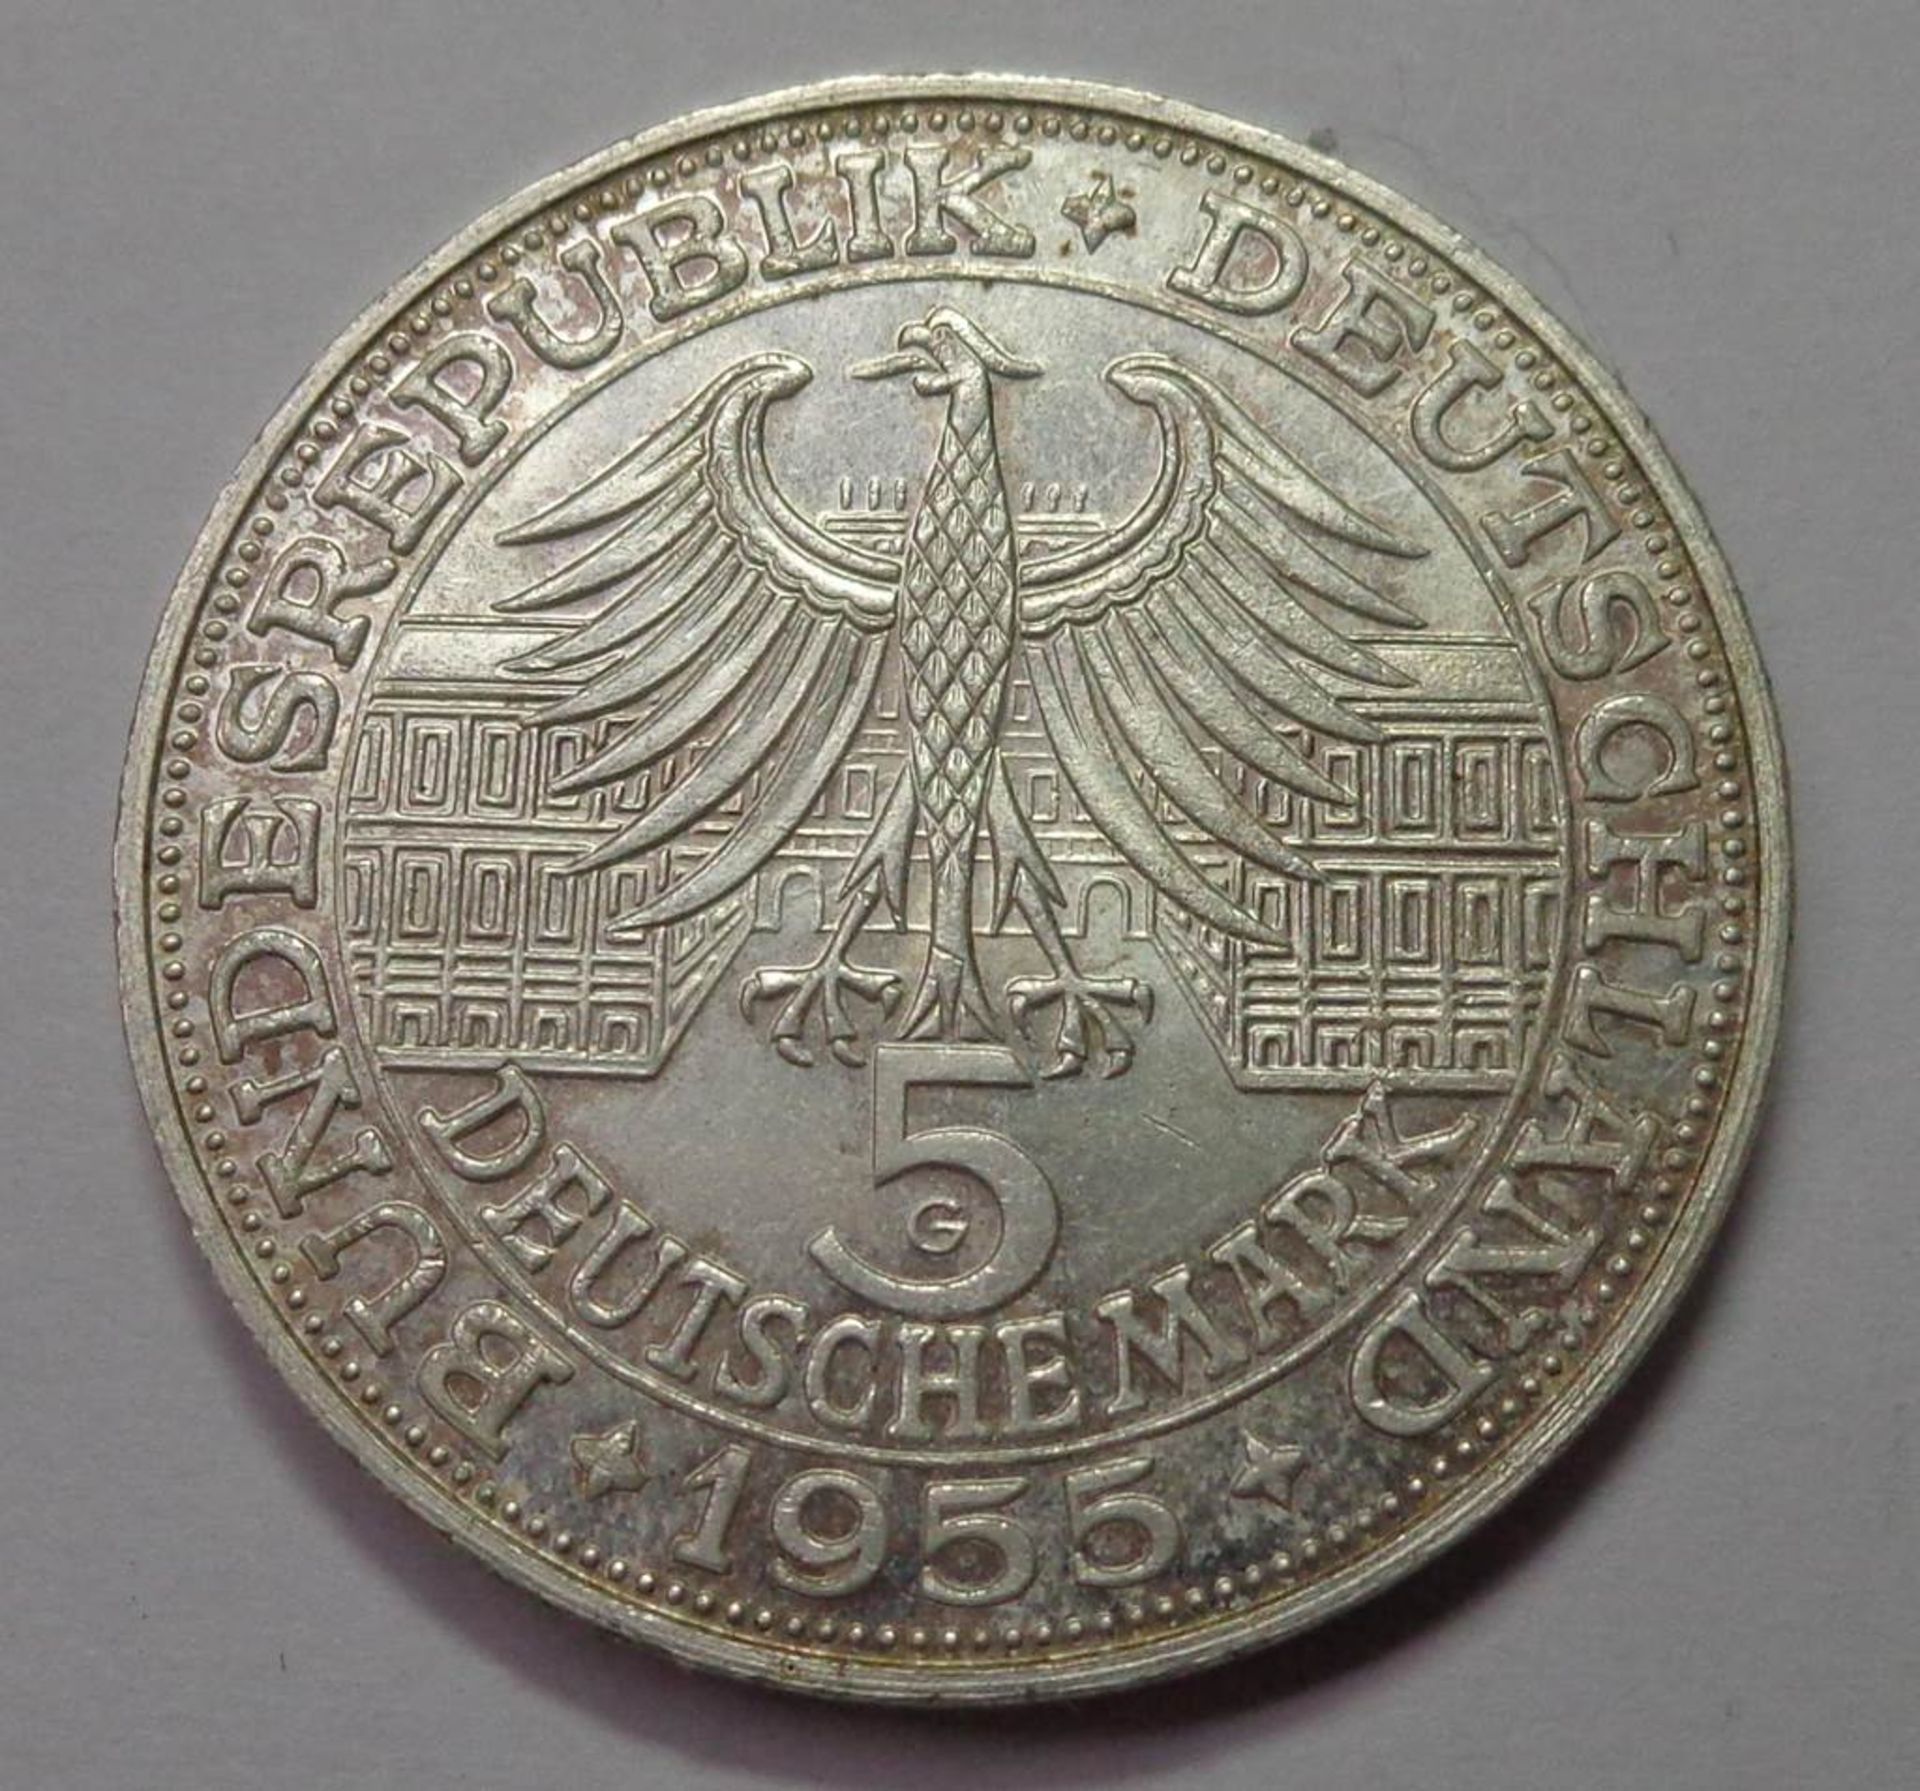 5 Deutsche Mark, 1955 G, Ludwig Wilhelm Markgraf von Baden, vz., 11,18 gr. - Bild 2 aus 2